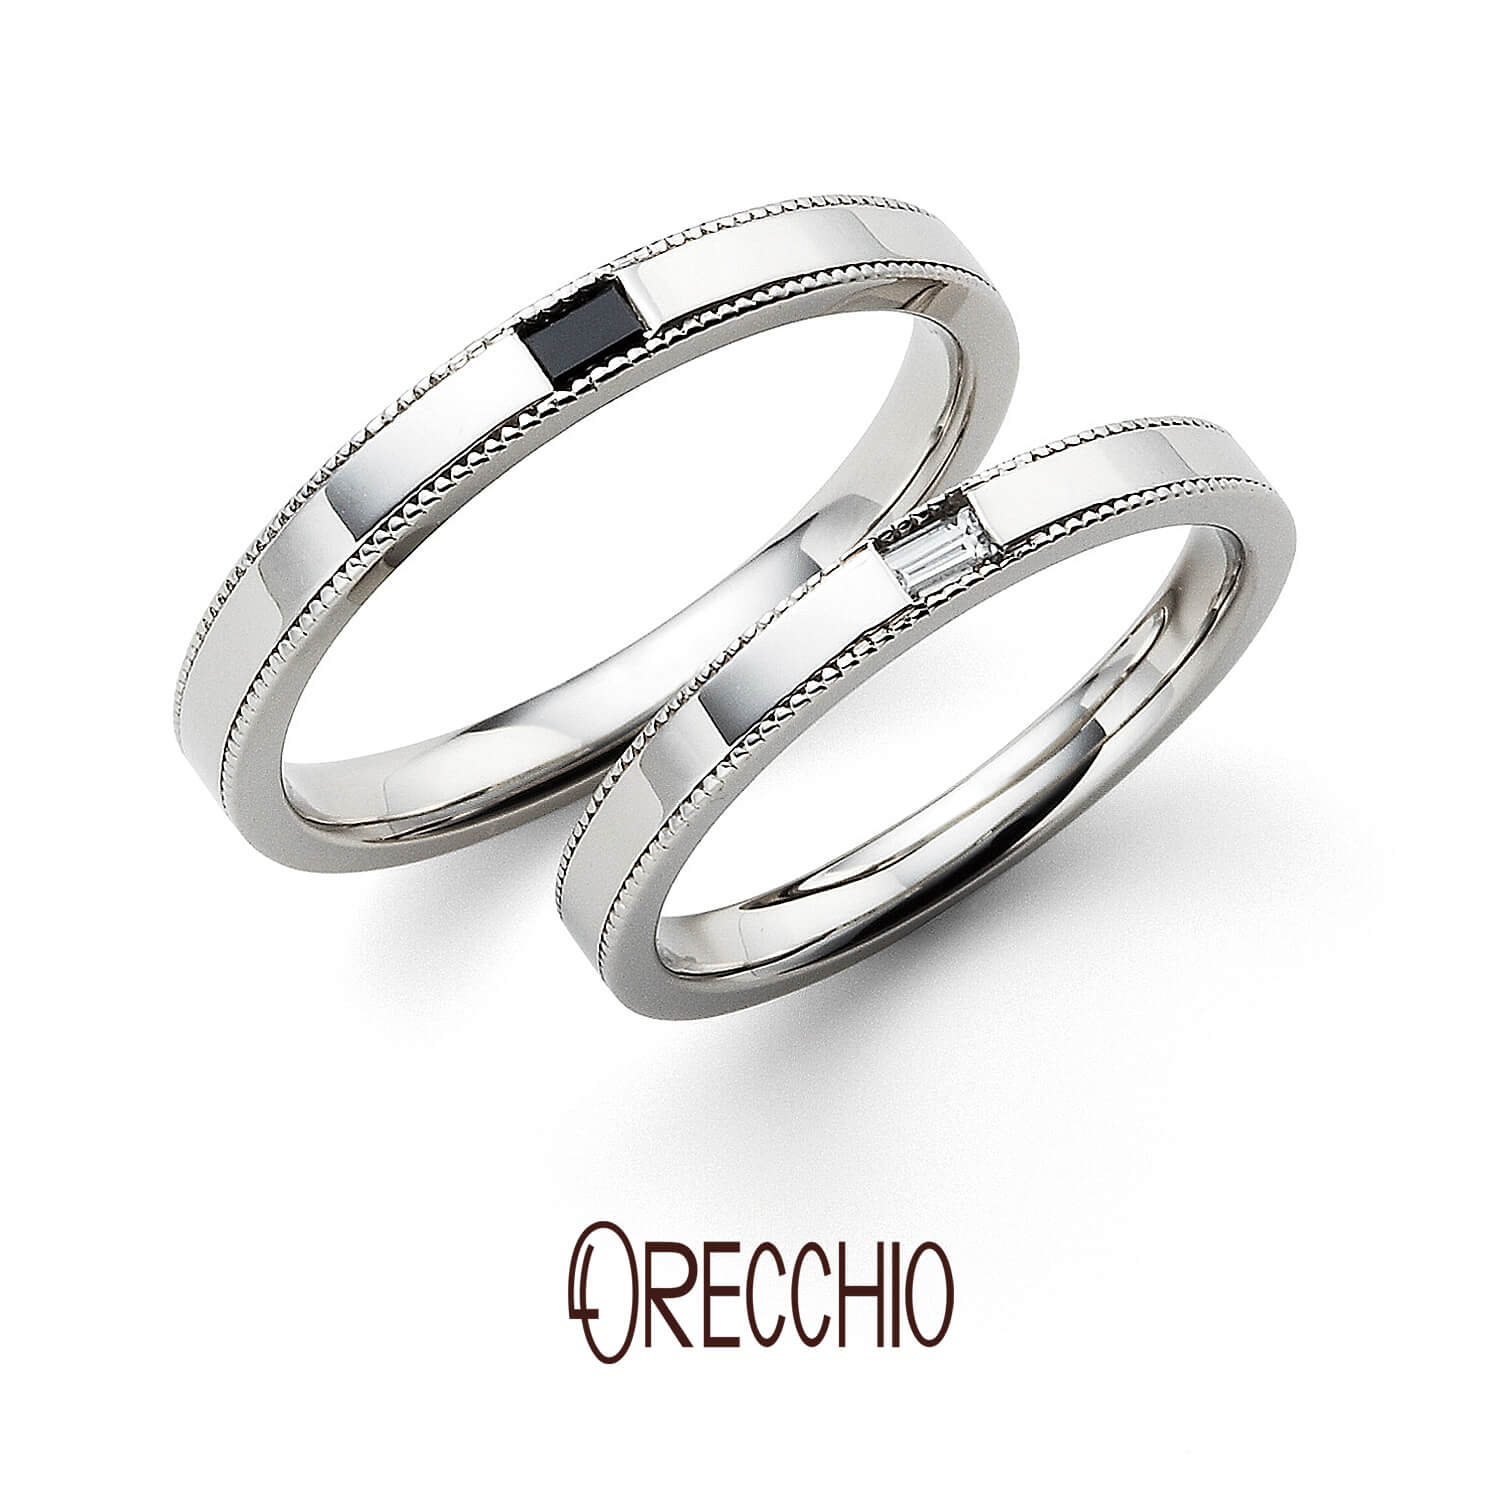 ORECCHIOオレッキオの結婚指輪safariサファリFM-2216とFM-2215